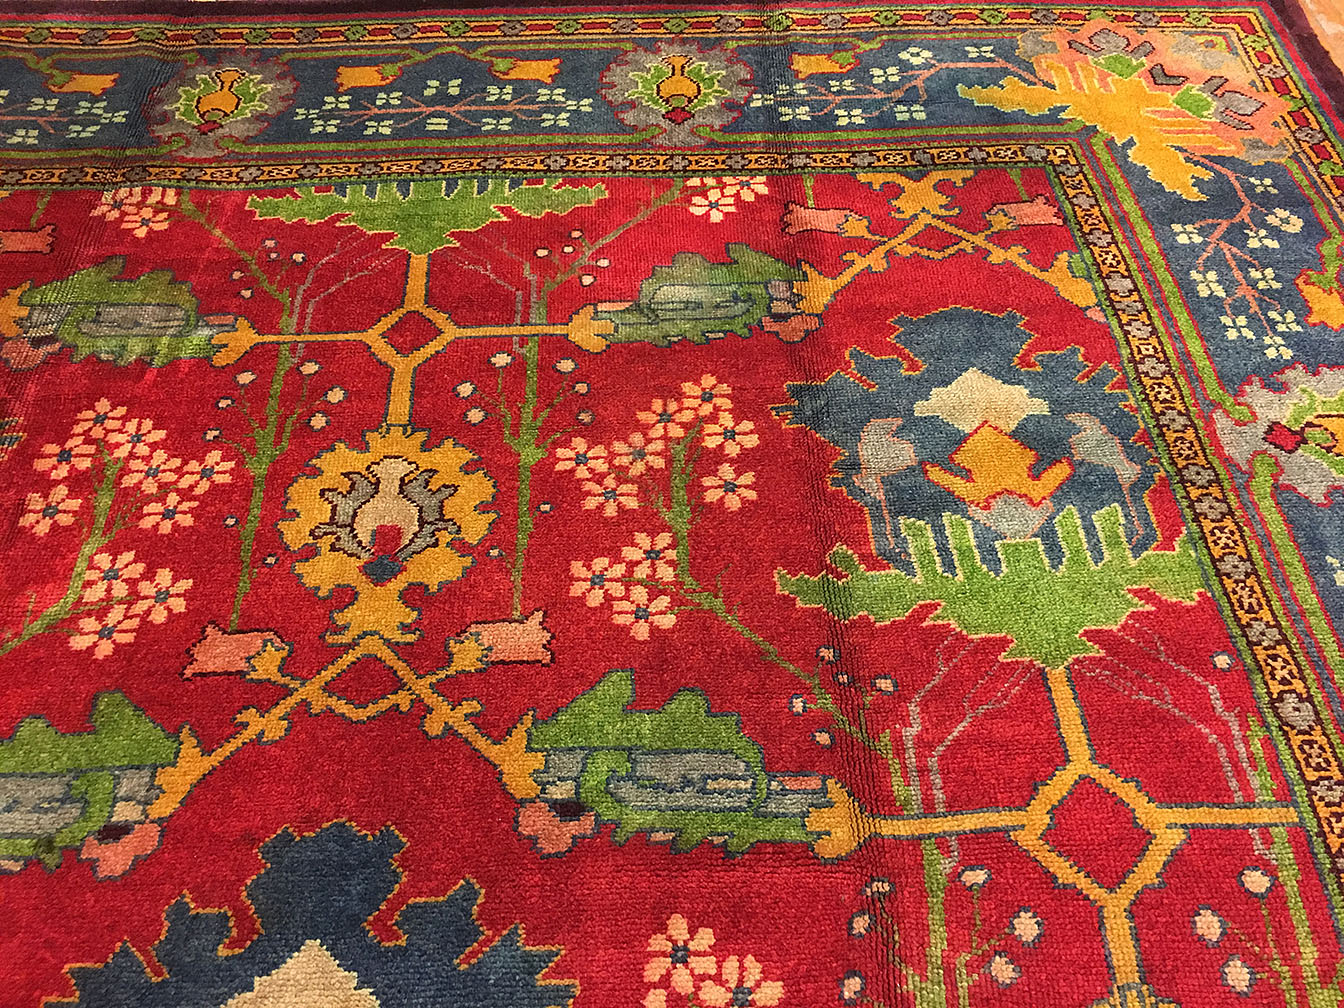 Antique donegal Carpet - # 1948